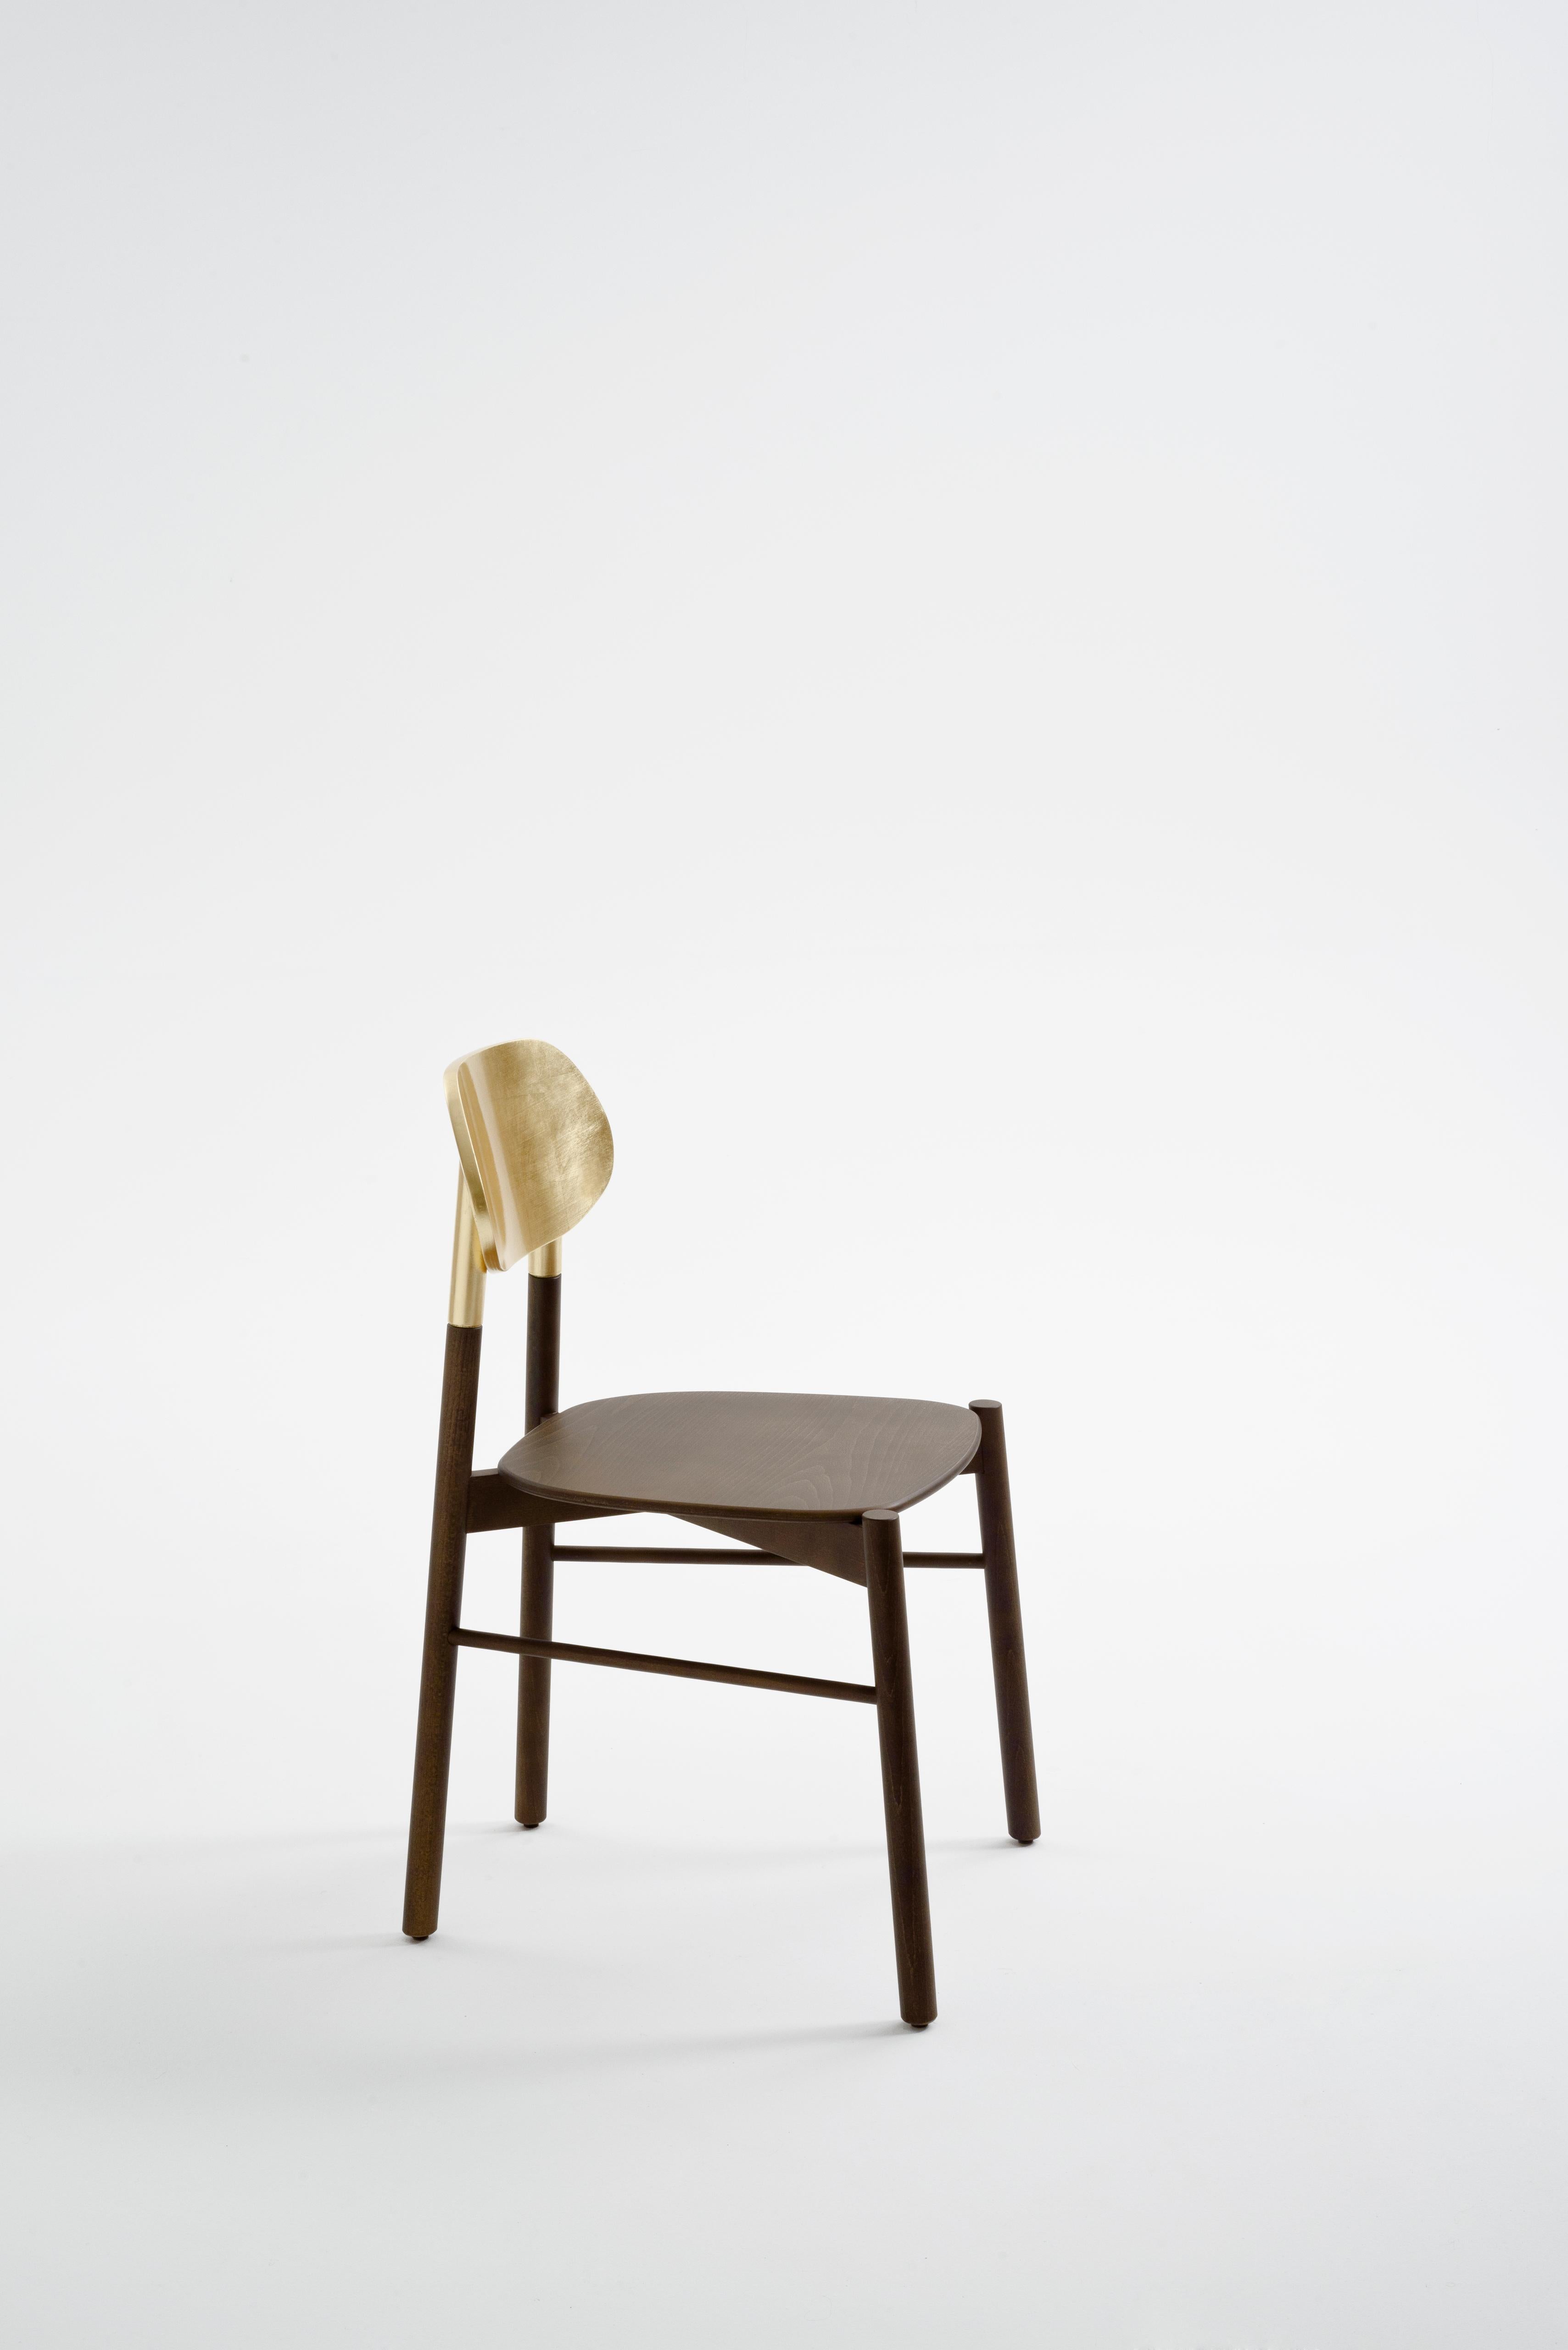 Dies ist ein Satz von 2 Stühlen, verpackt in einer einzigen Schachtel. Ein essentieller Stuhl in der Form A, der durch die Struktur aus Nussbaumholz und die authentische, handgefertigte Rückenlehne aus Blattgold wertvoll ist. Er ist äußerst bequem